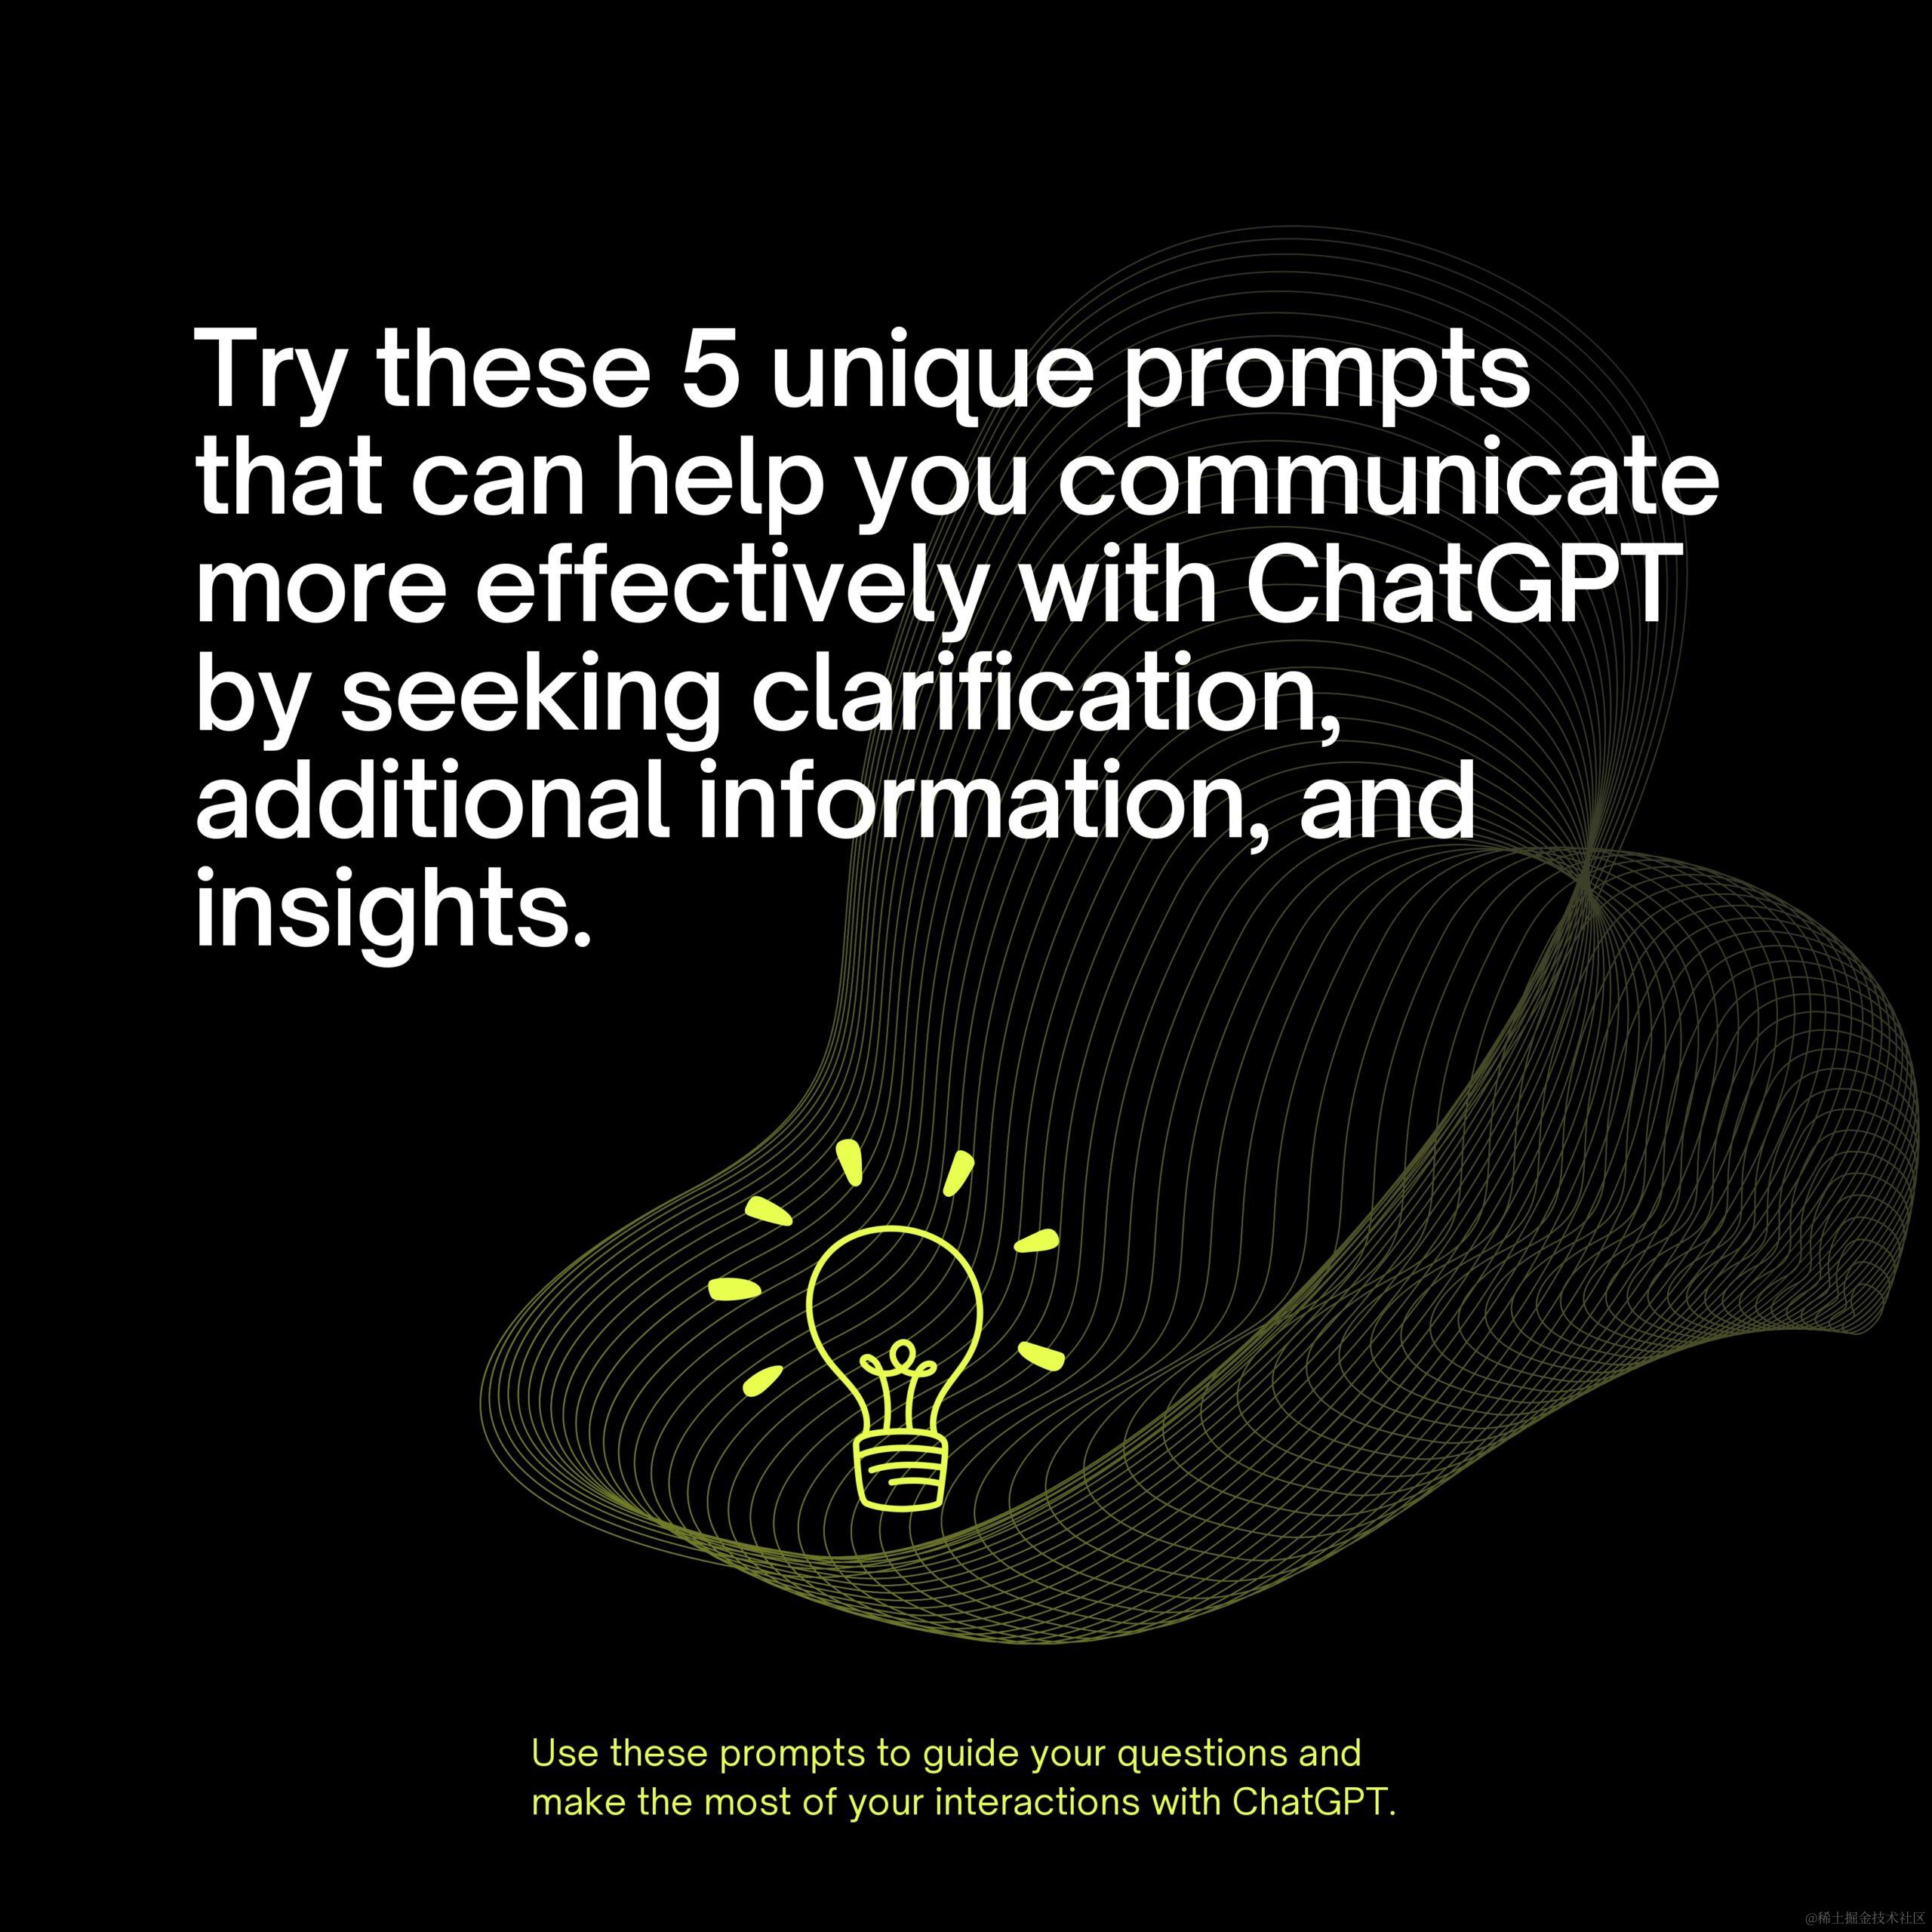 通过这 5 项 ChatGPT 创新增强您的见解